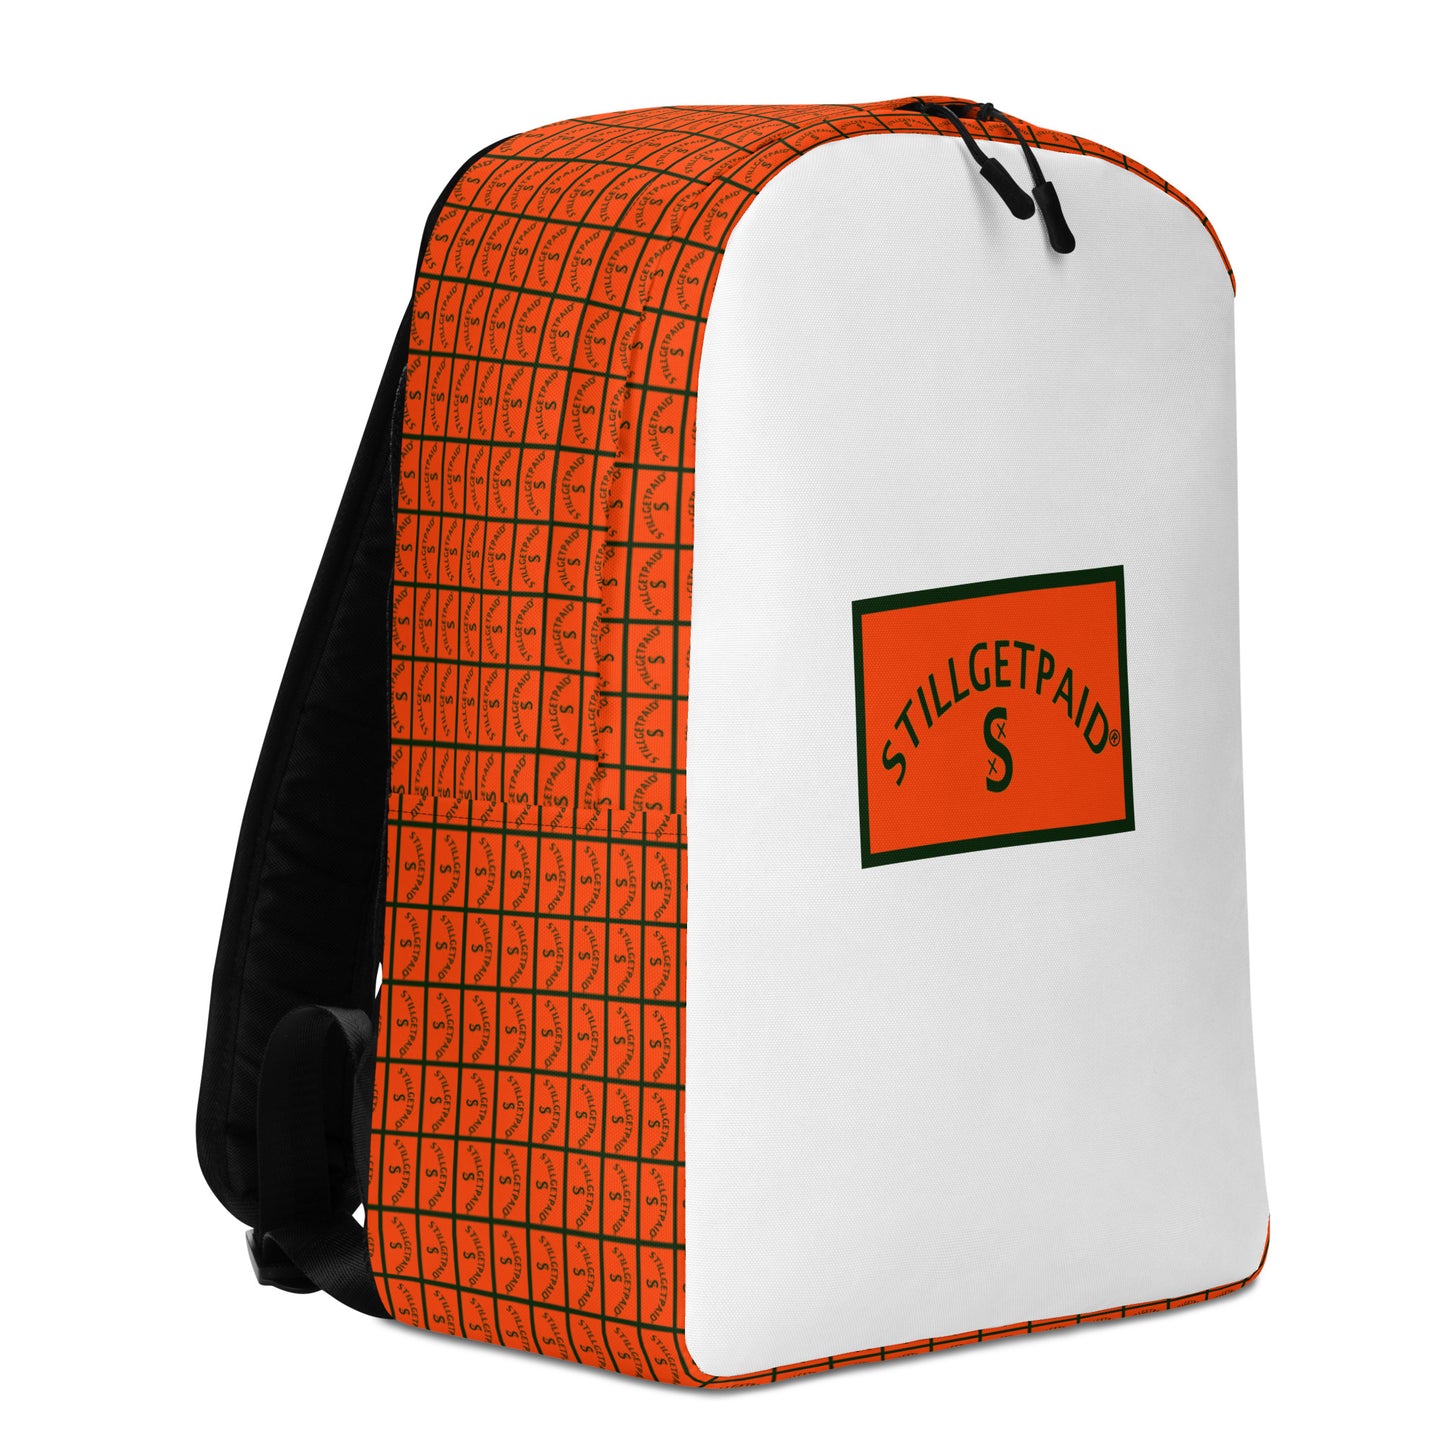 STILLGETPAID® APPAREL Backpack